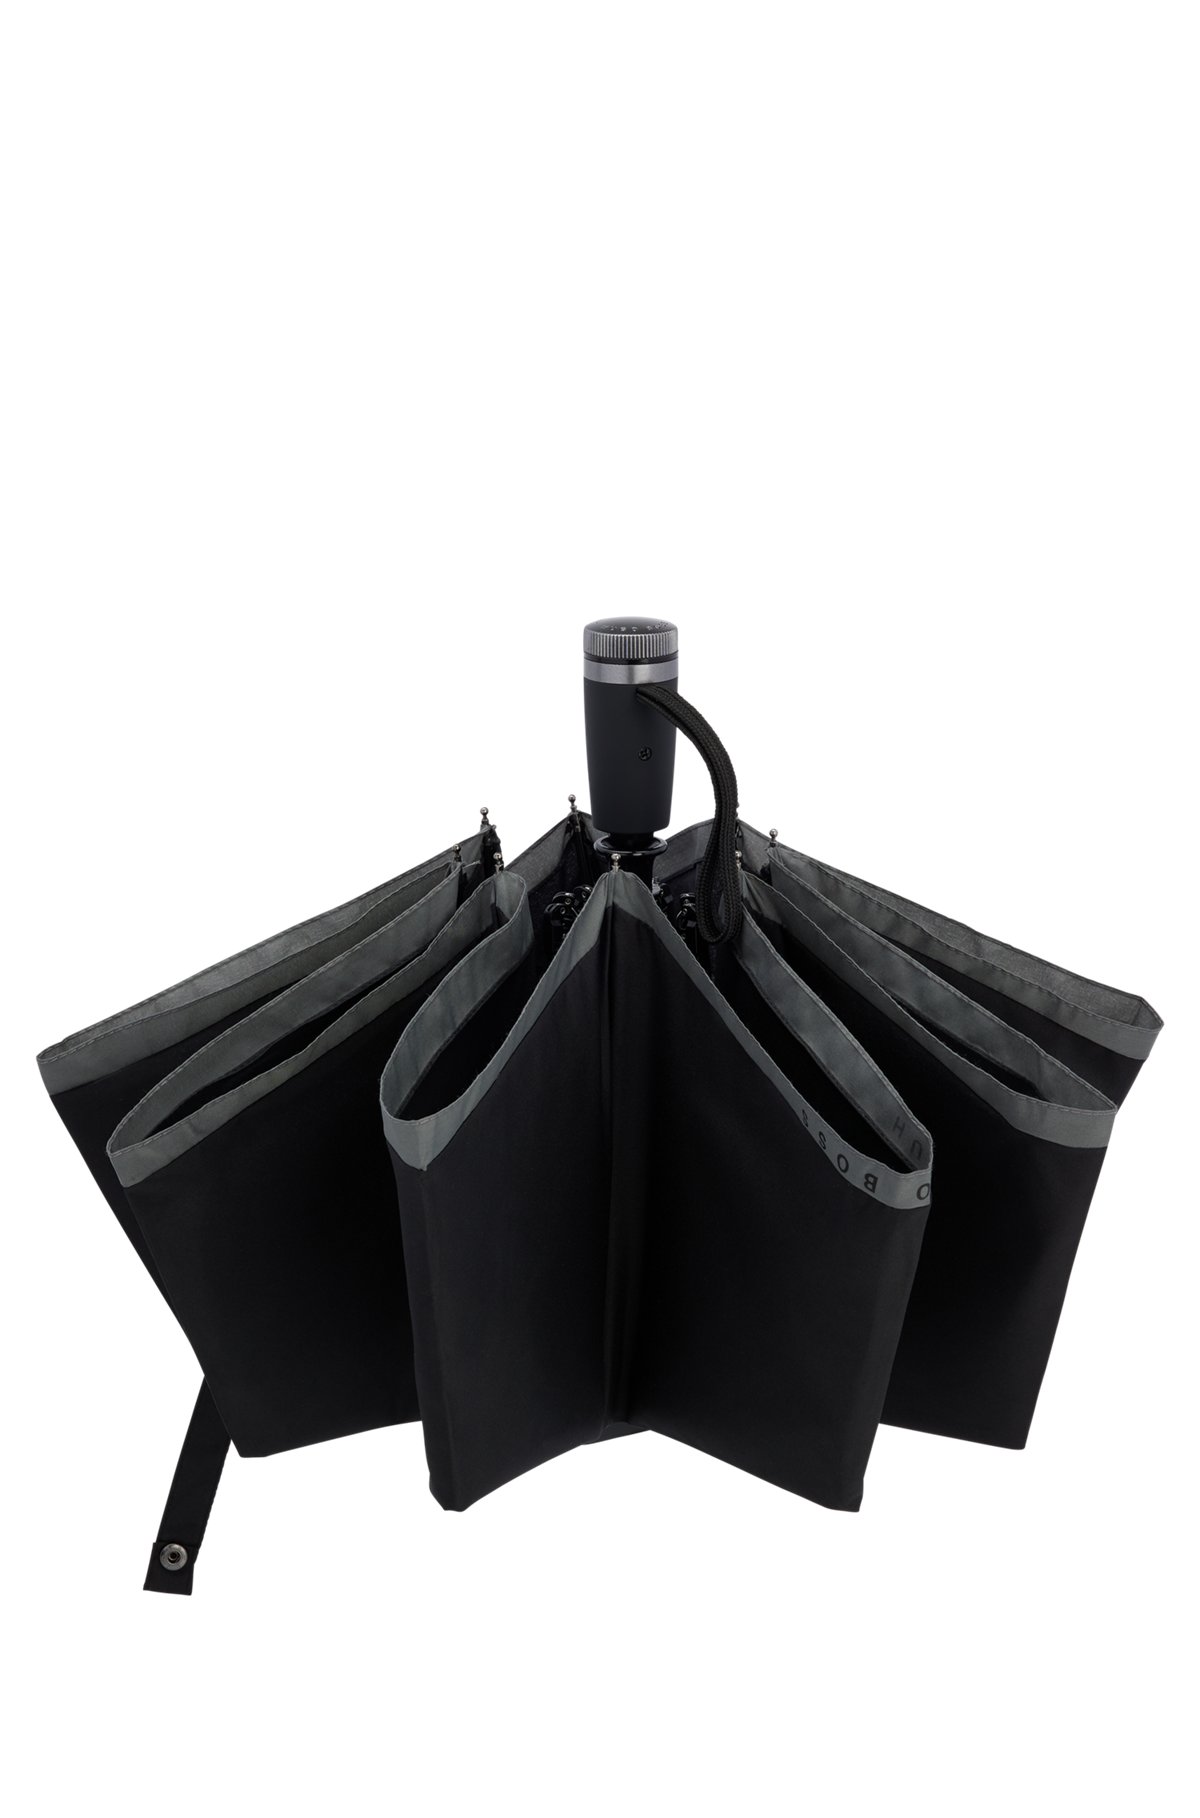 Pocket umbrella with grey border, Black